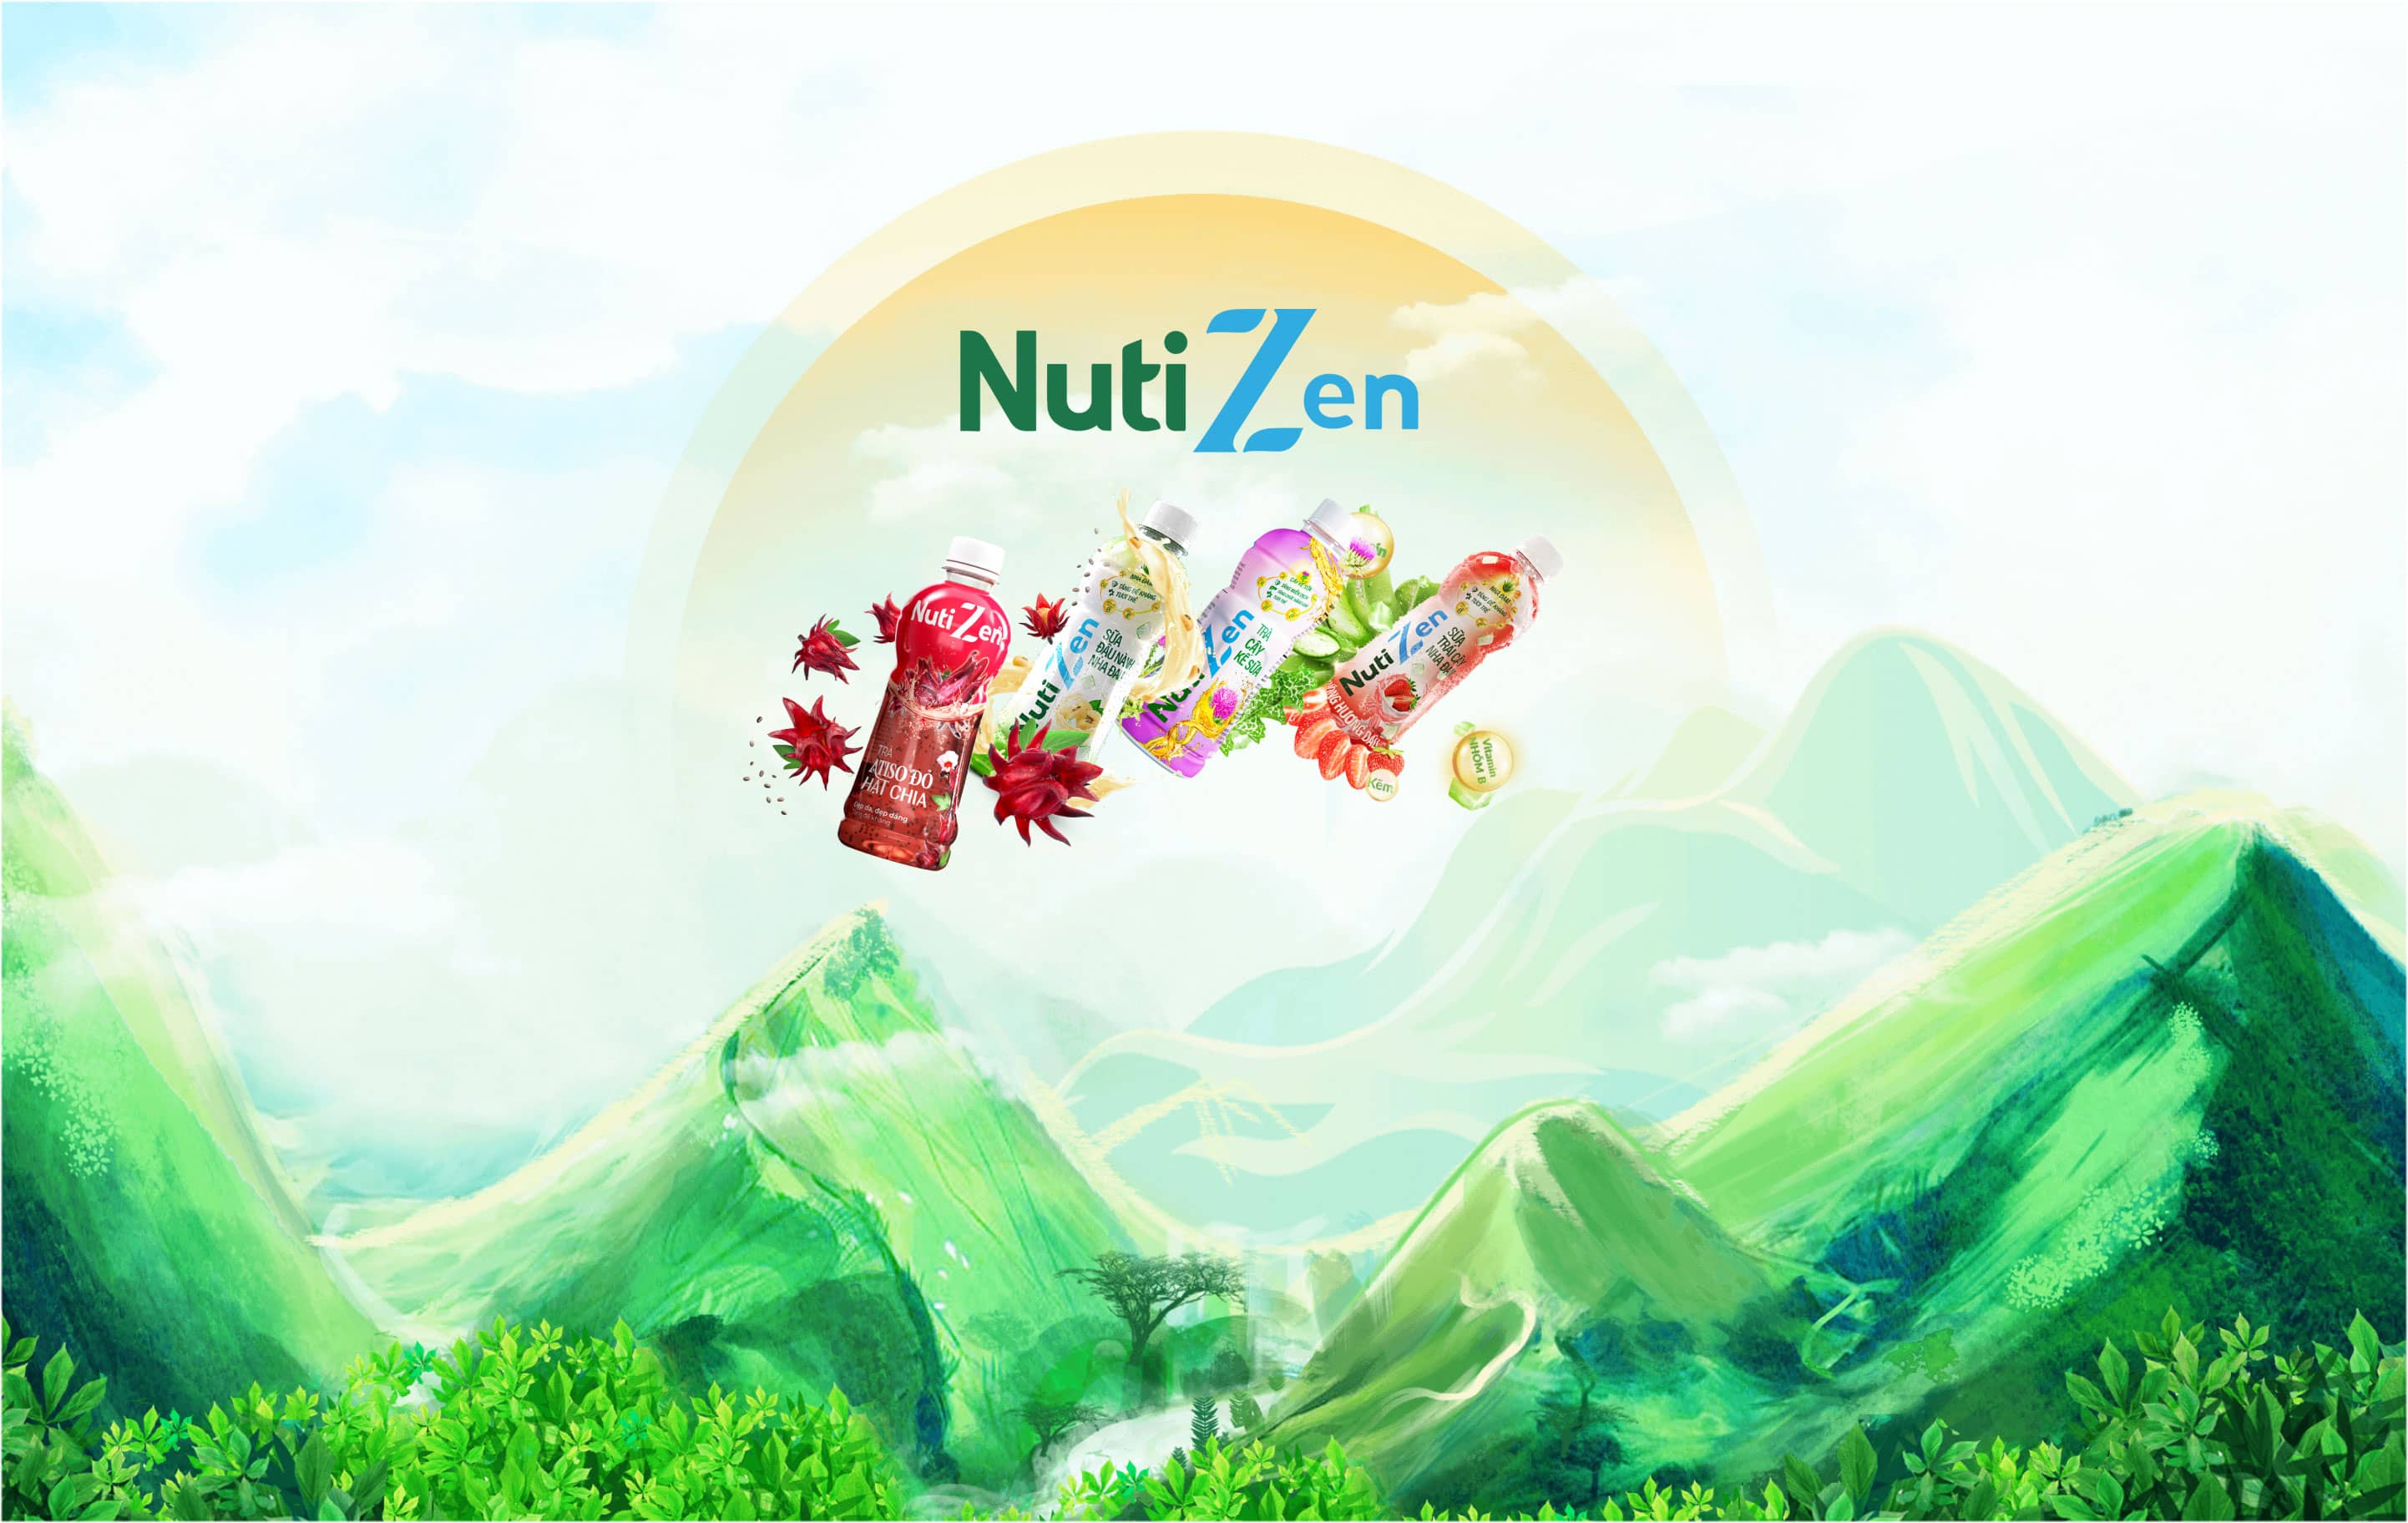 NutiZen - Sống vui khỏe, thuận tự nhiên